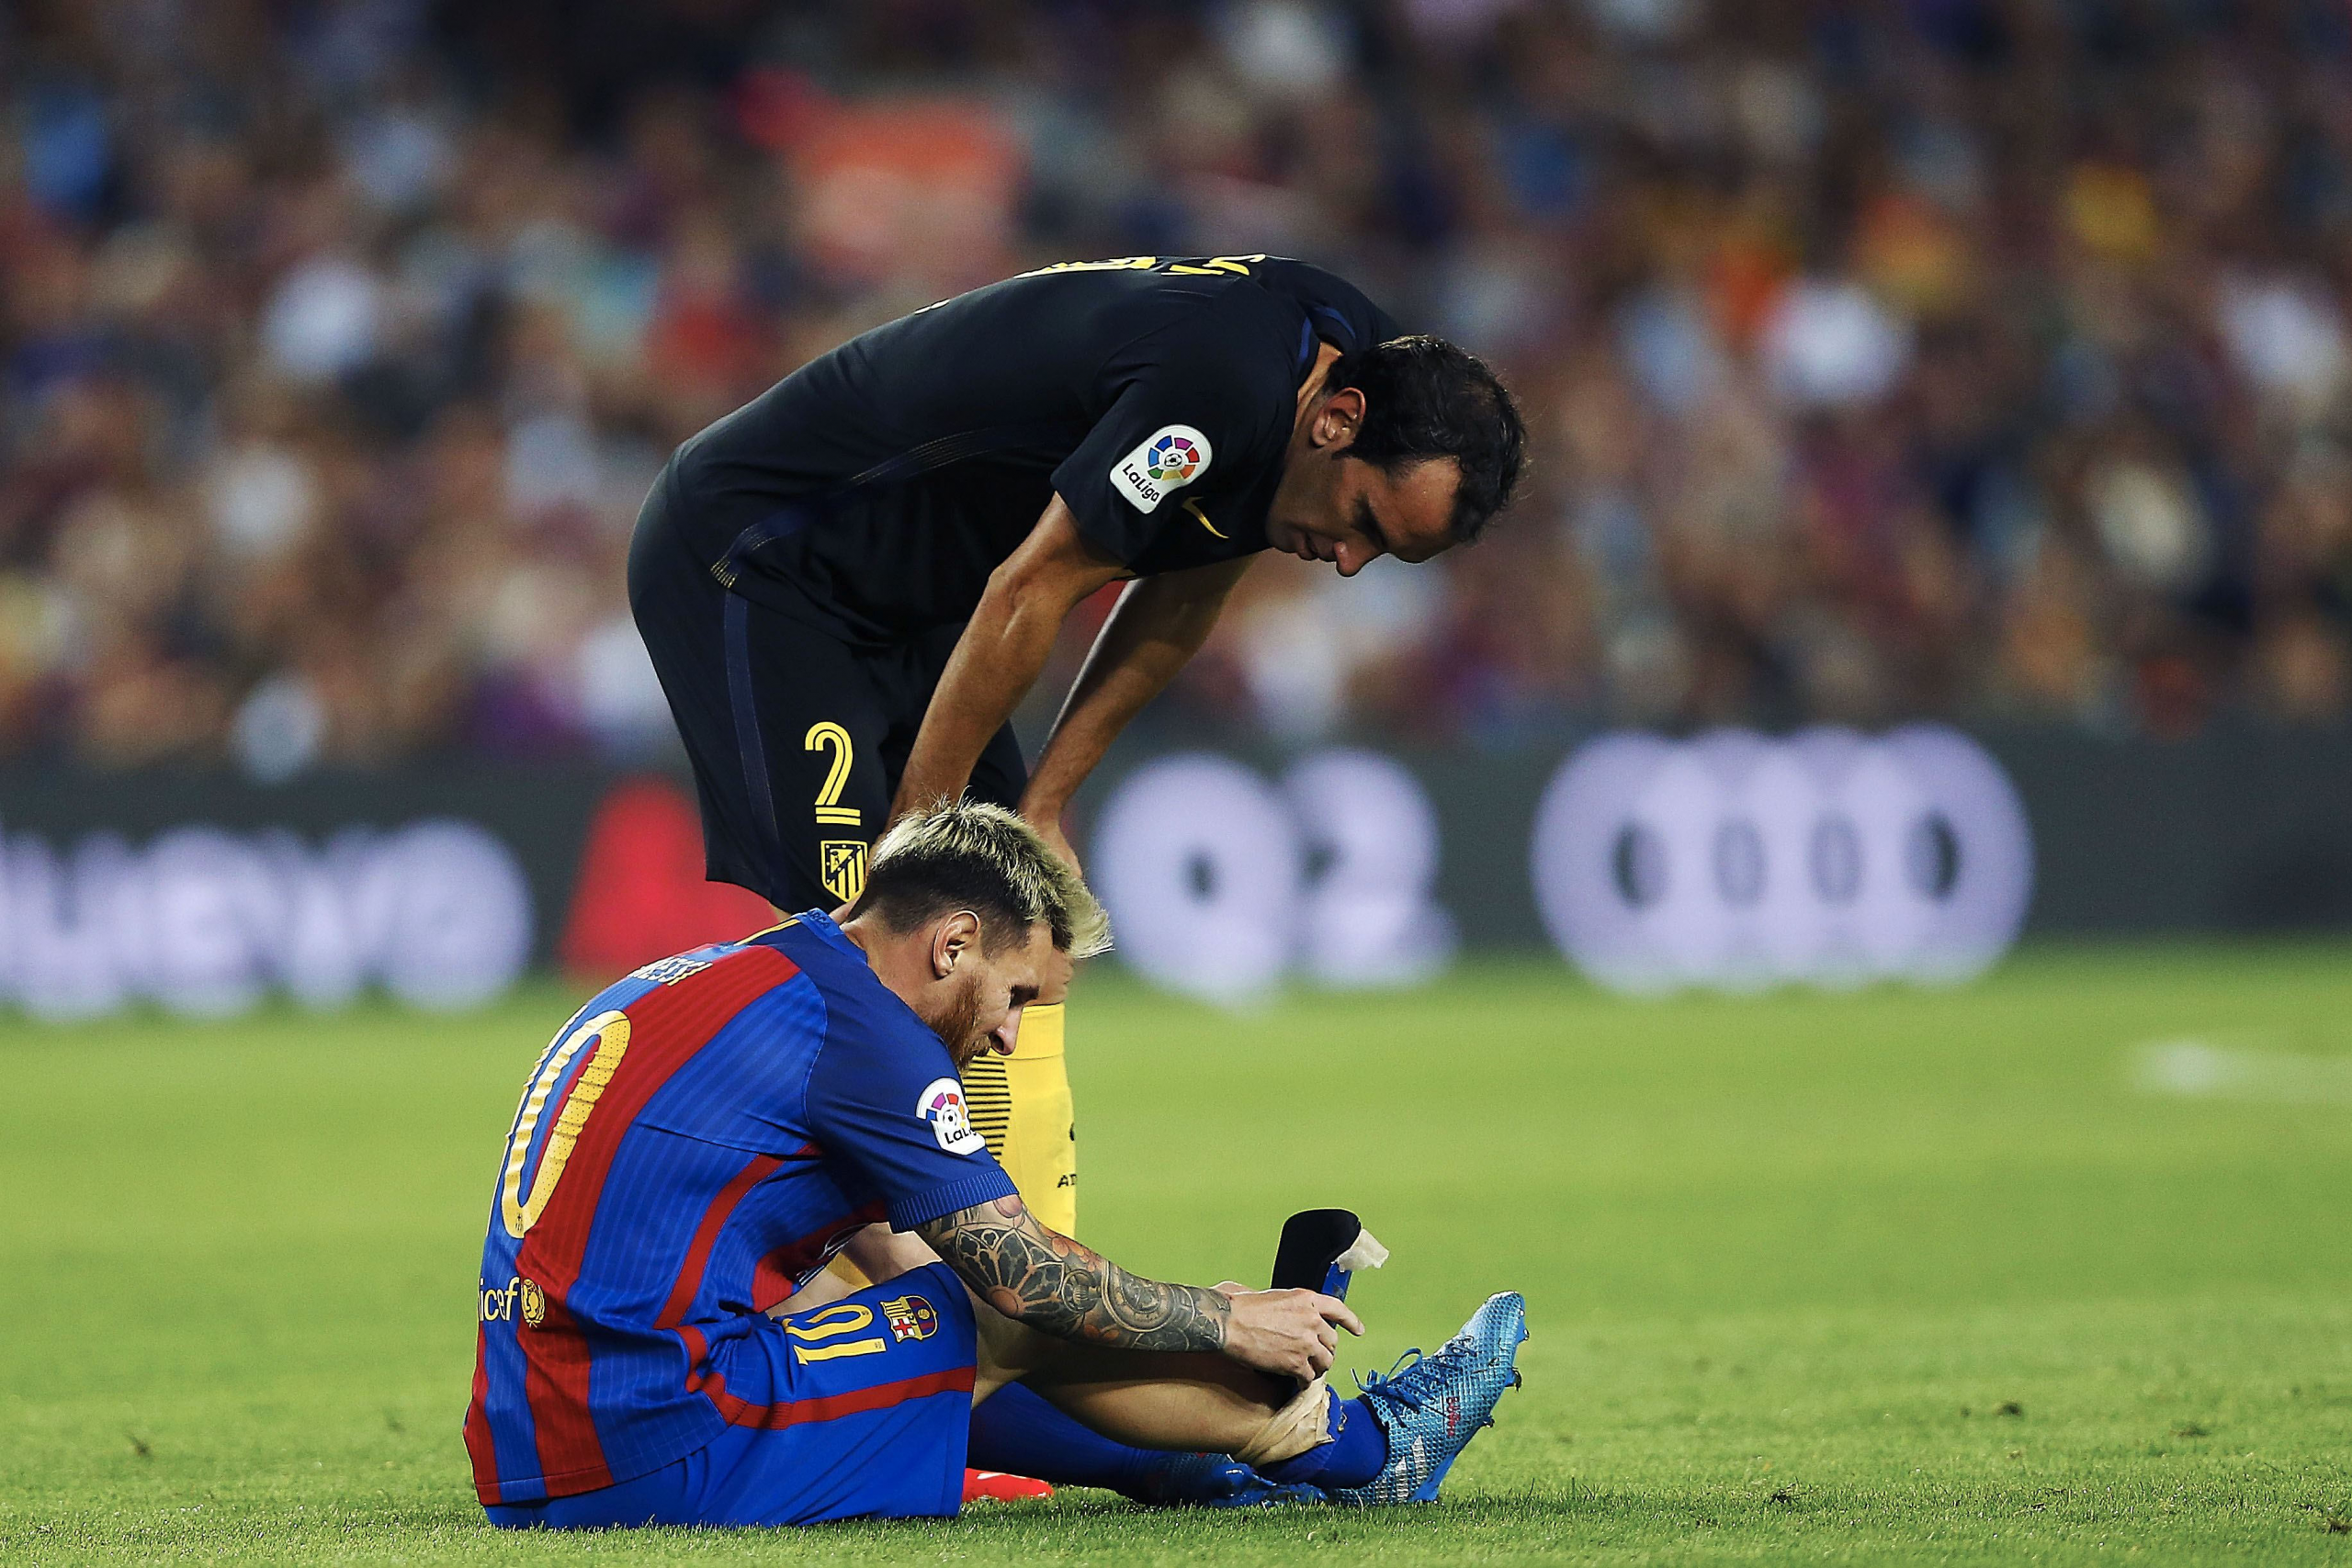 wp image 430641 scaled - Messi se retira por molestias musculares en el muslo derecho